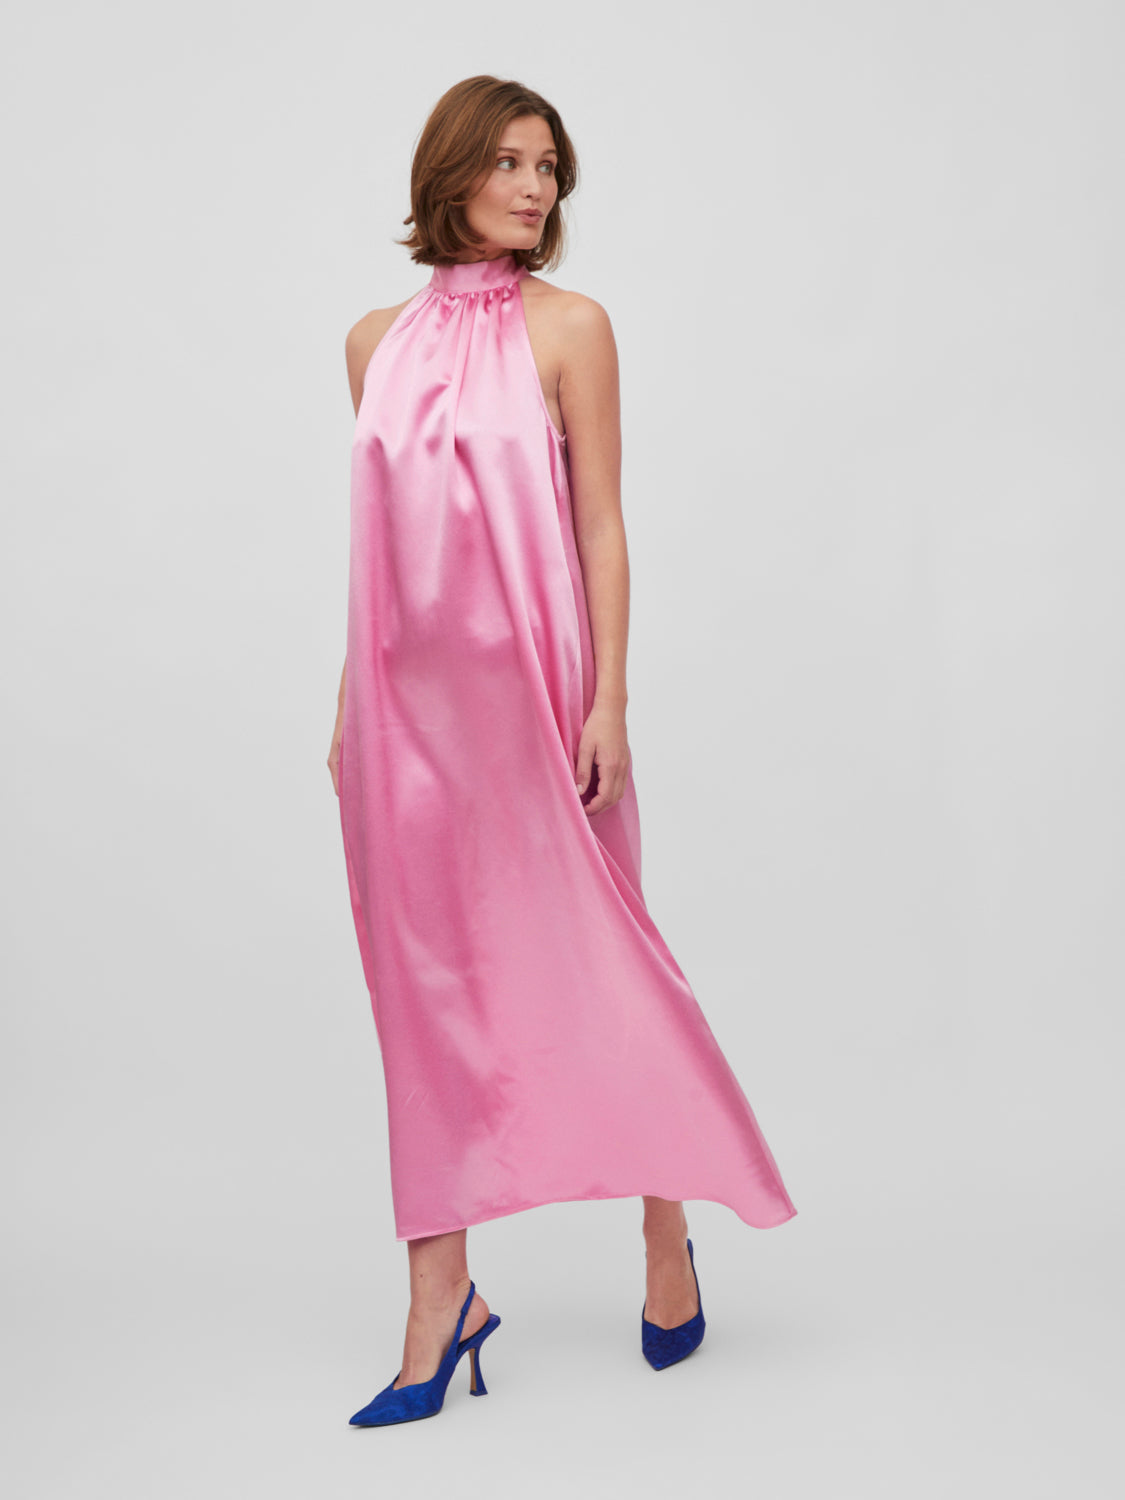 VISITTAS Dress - Begonia Pink